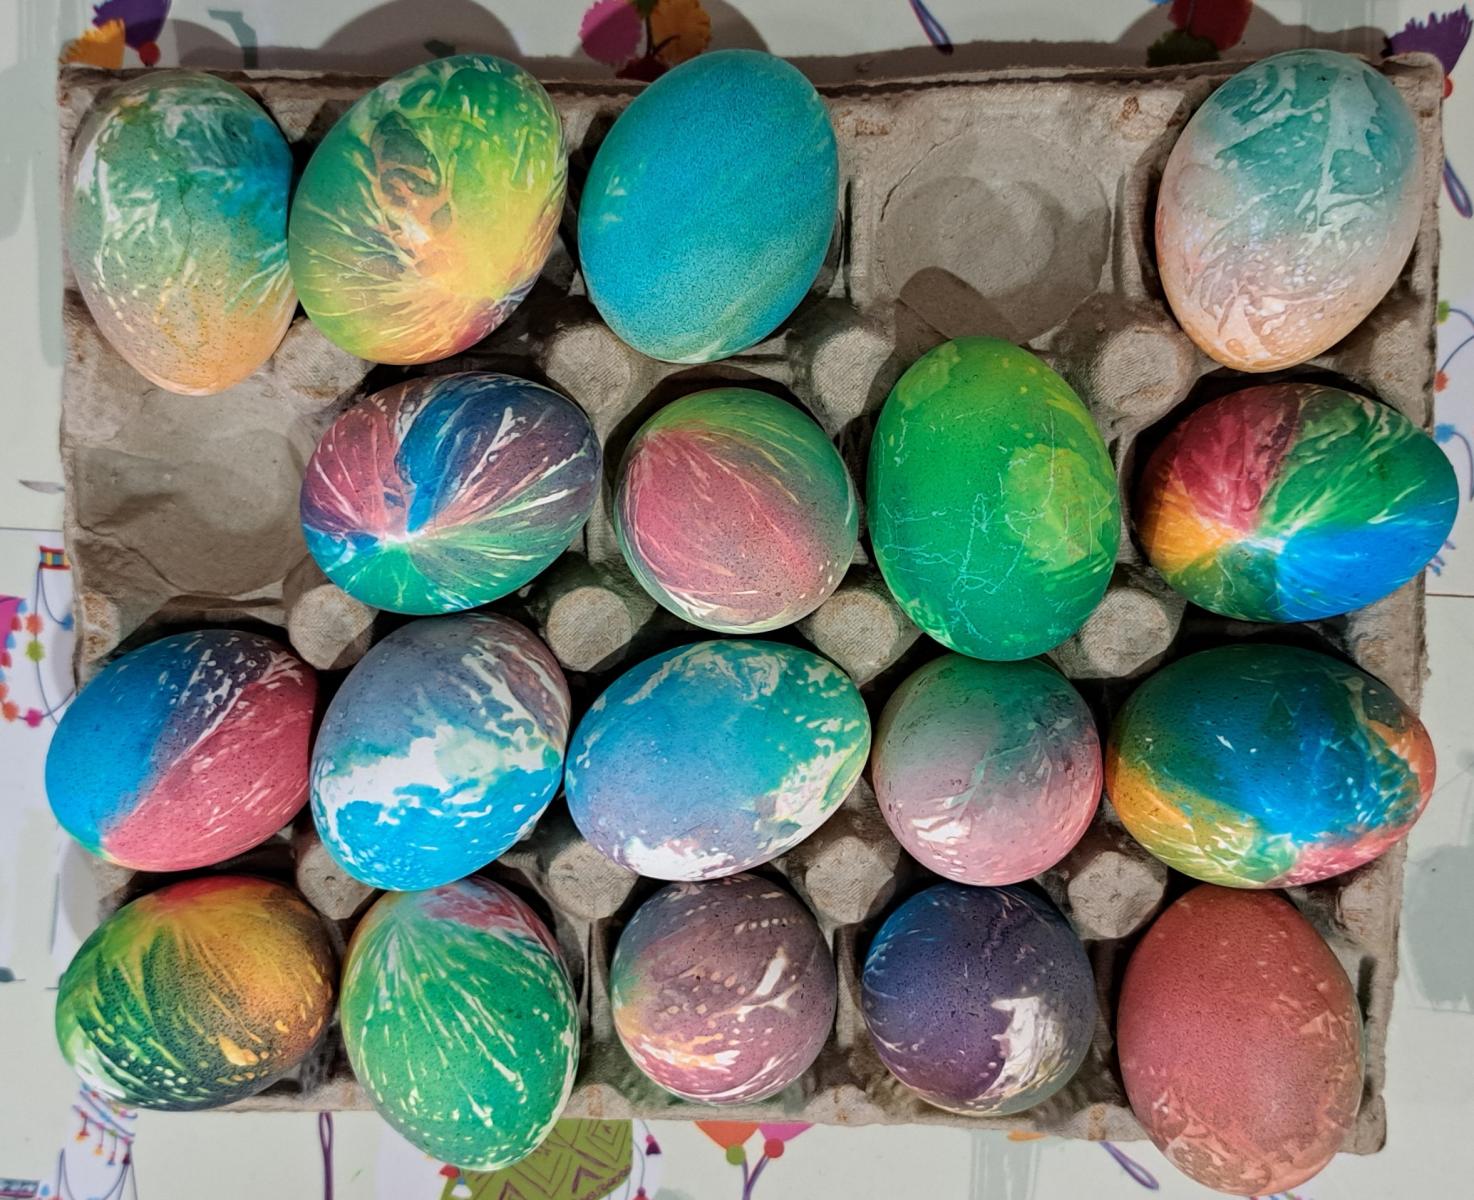 wielobarwnie pomalowane jajka leżą w kobiałce